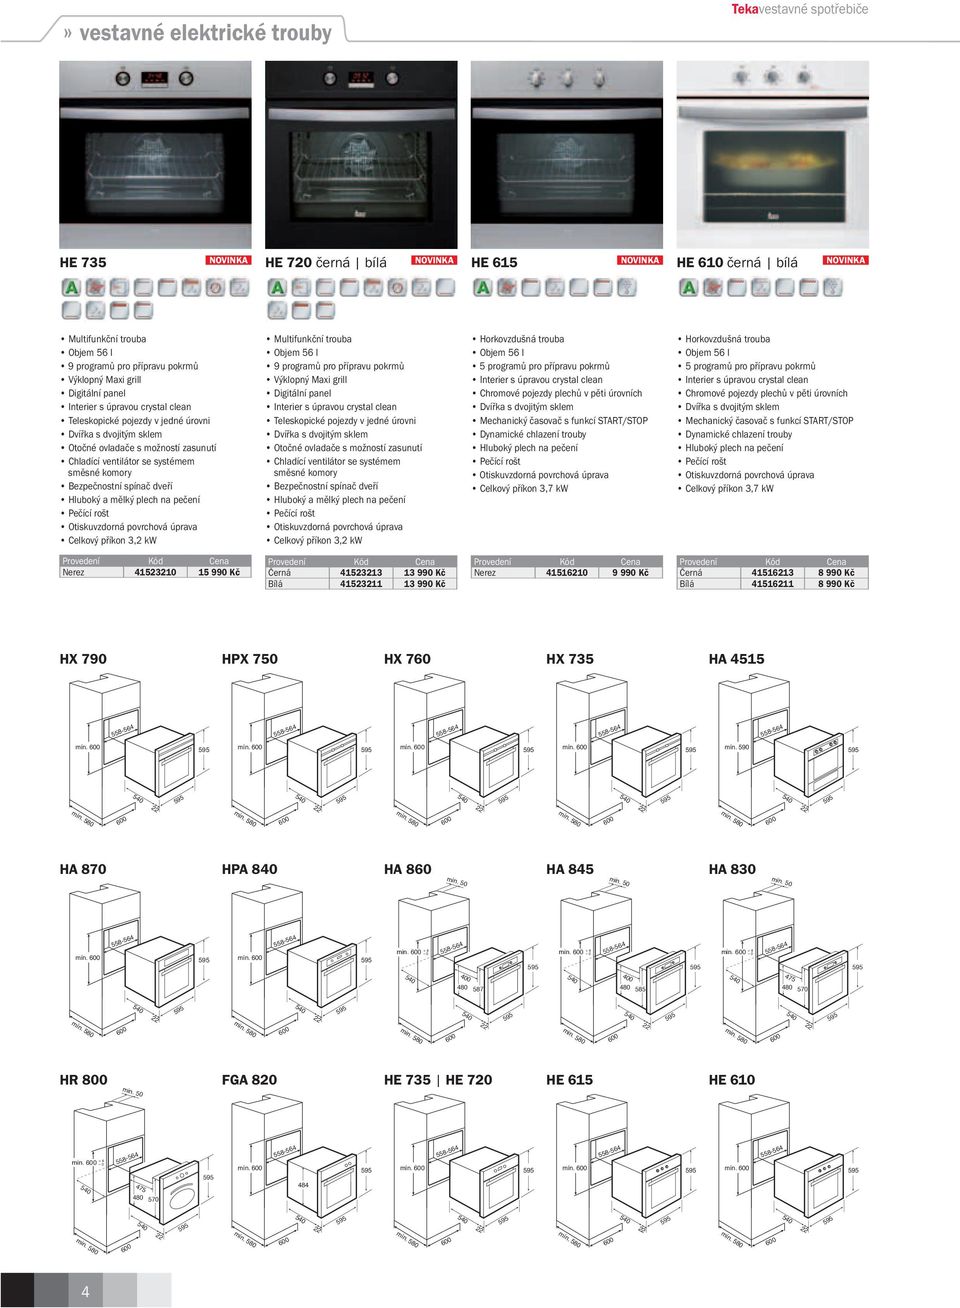 programů pro přípravu pokrmů Výklopný Maxi grill Digitální panel Teleskopické pojezdy v jedné úrovni Dvířka s dvojitým sklem Otočné ovladače s možností zasunutí Bezpečnostní spínač dveří Hluboký a